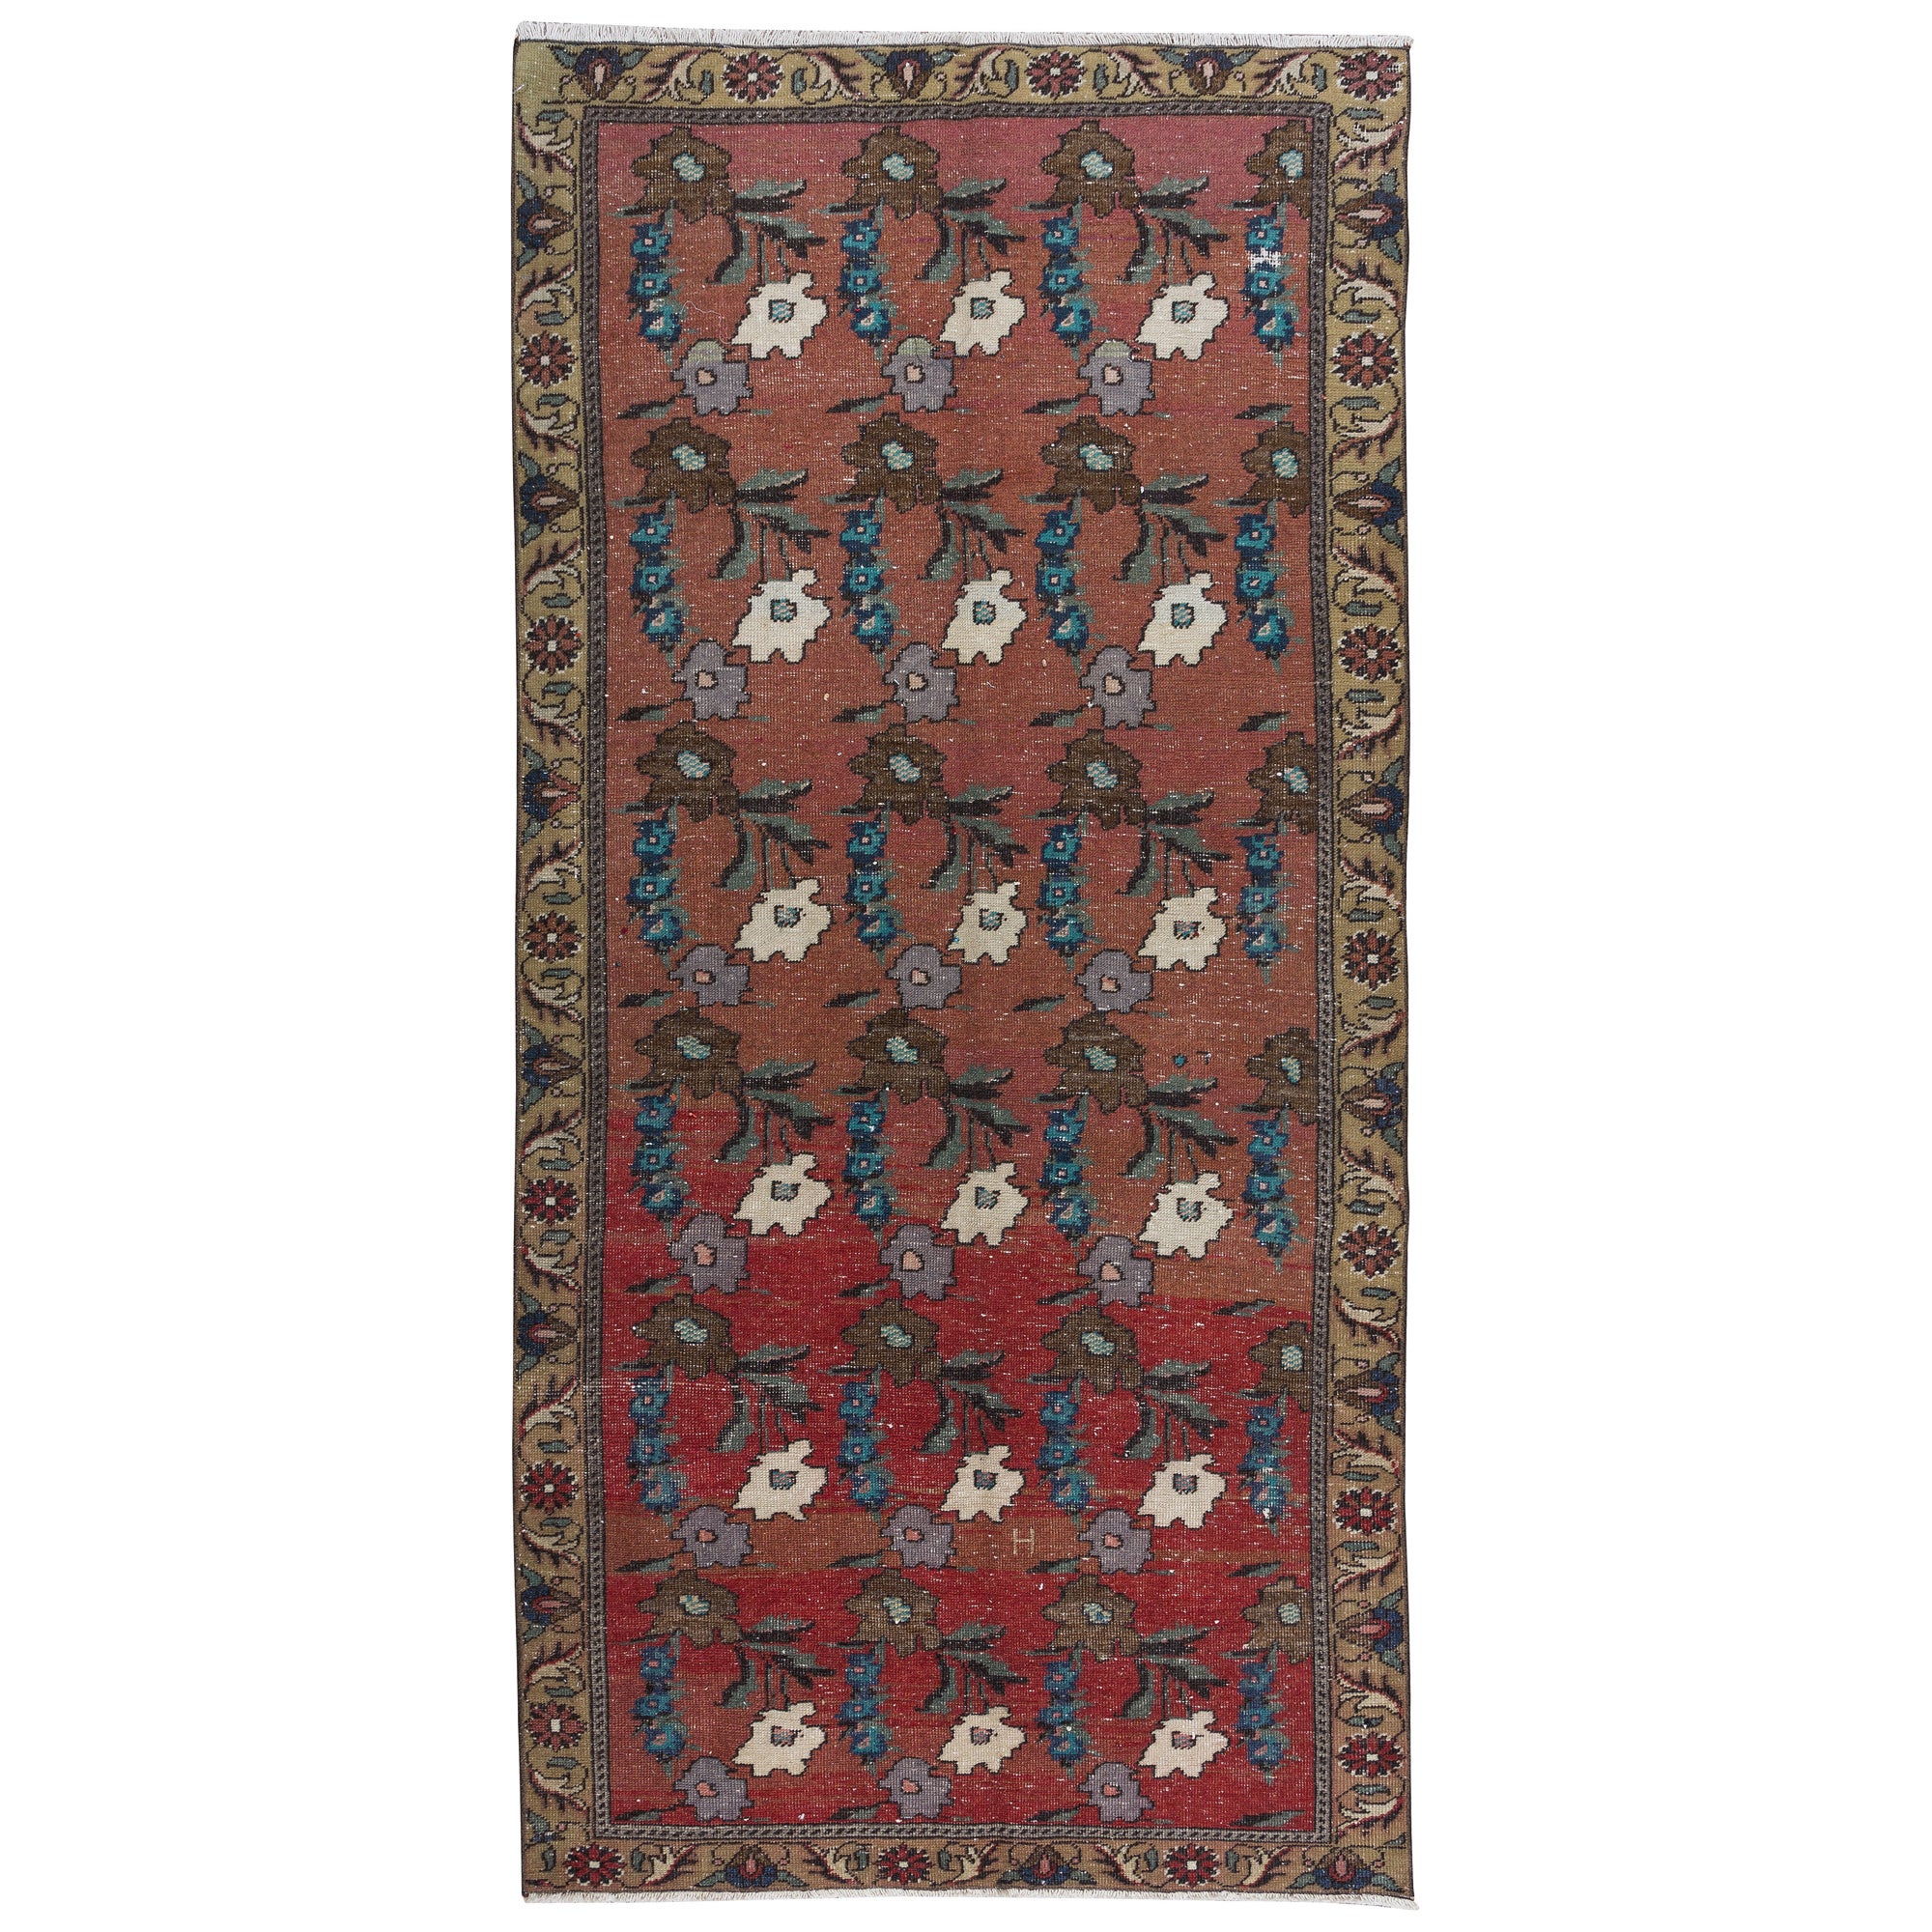 3.9x8.4 Ft handgefertigter türkischer Vintage-Teppich mit Blumenmuster in Rot, Blau & Beige, handgefertigt